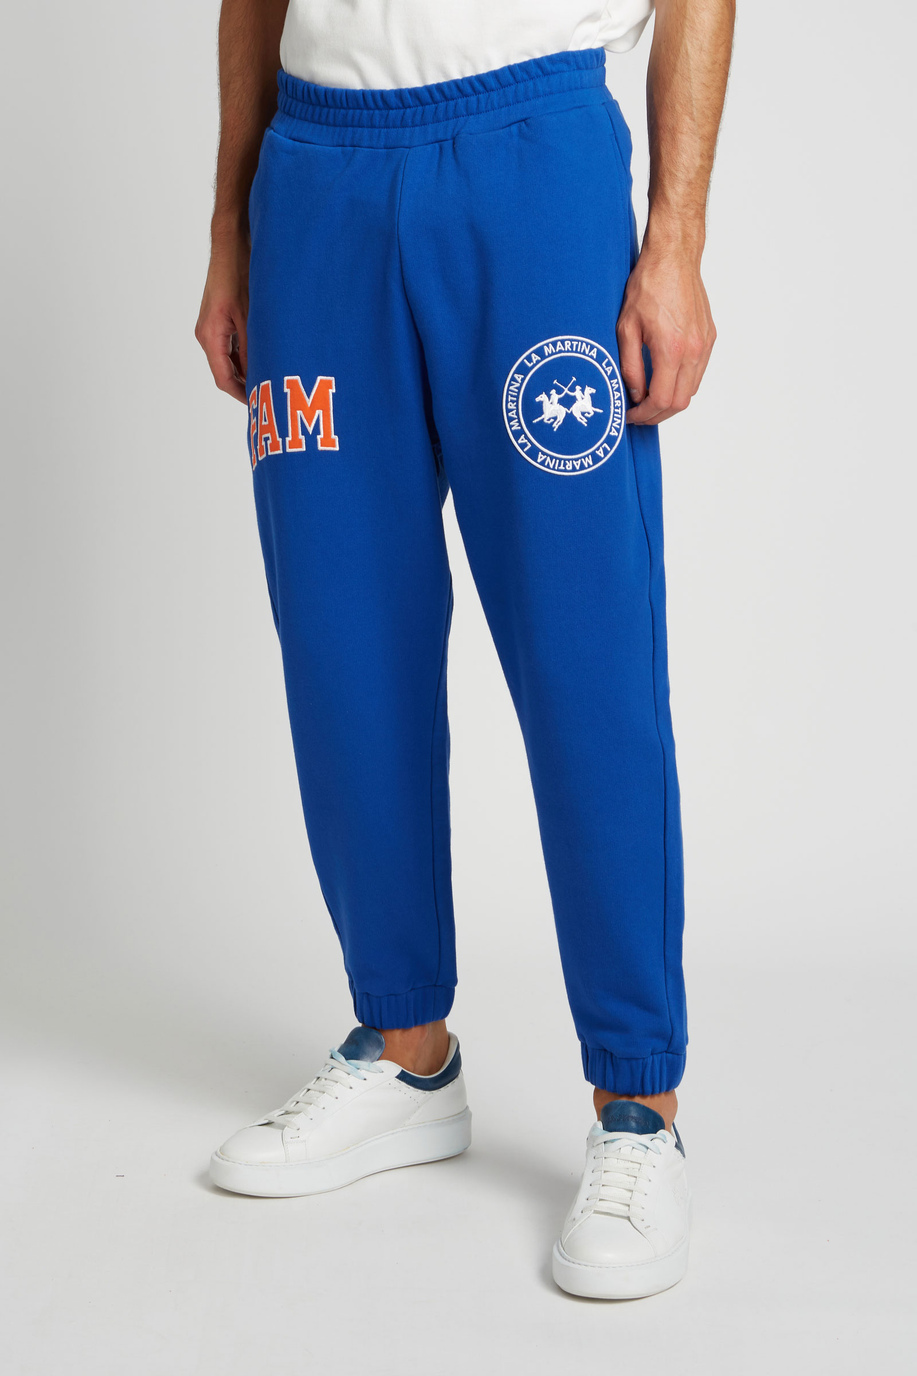 Pantalone da uomo modello jogger in cotone elasticizzato oversize - Family First x La Martina | La Martina - Official Online Shop